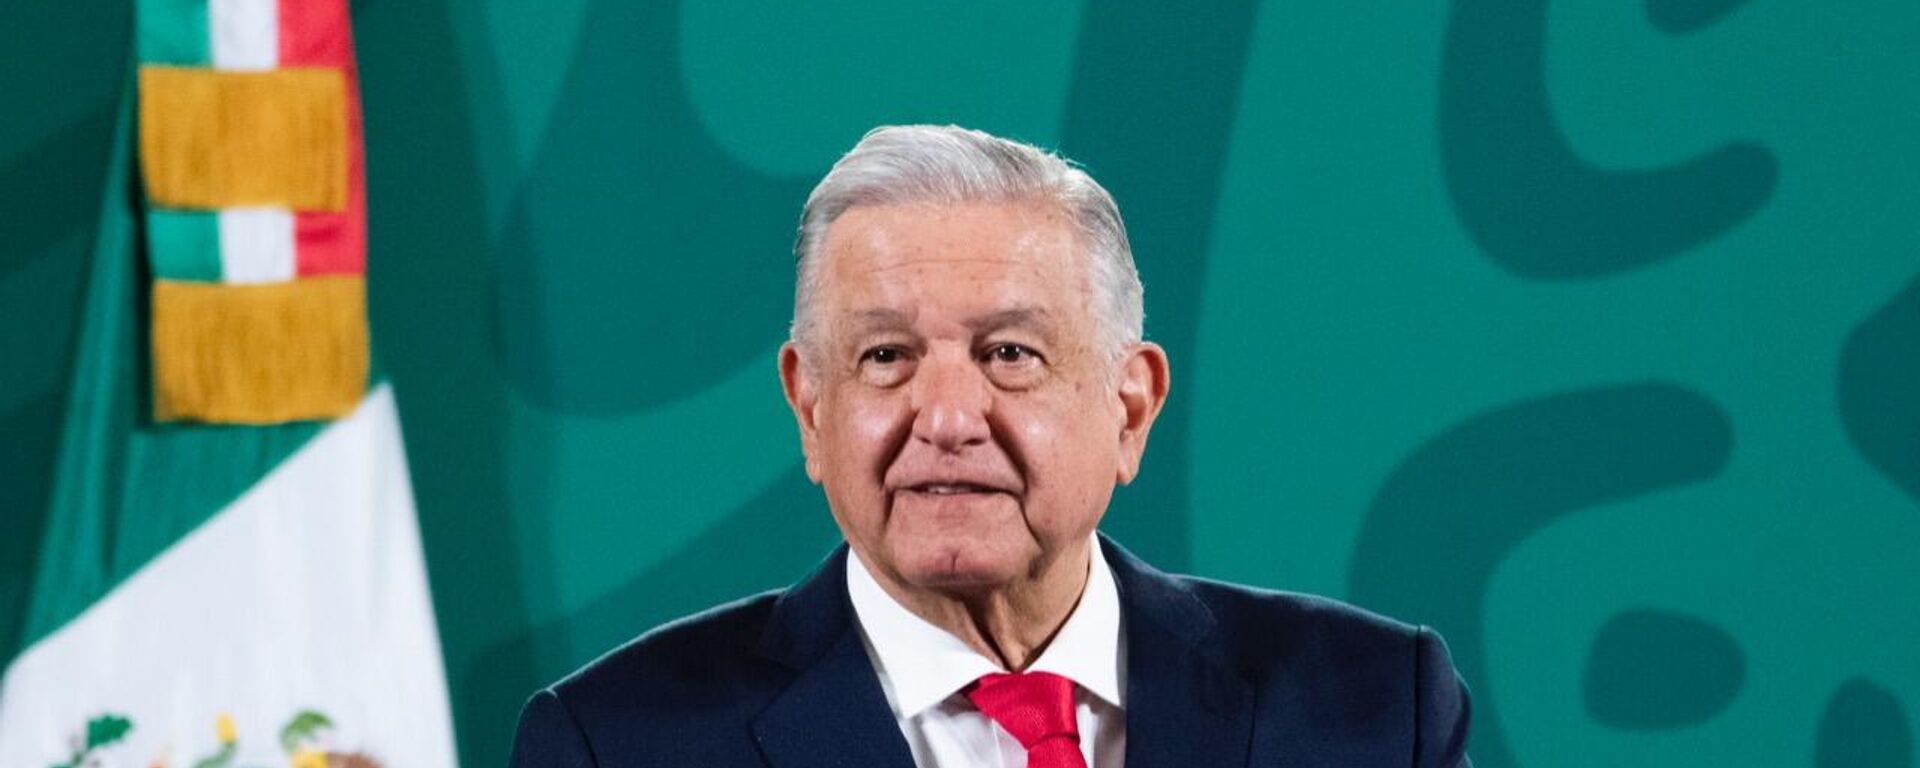 Andrés Manuel López Obrador, presidente de México - Sputnik Mundo, 1920, 11.10.2021